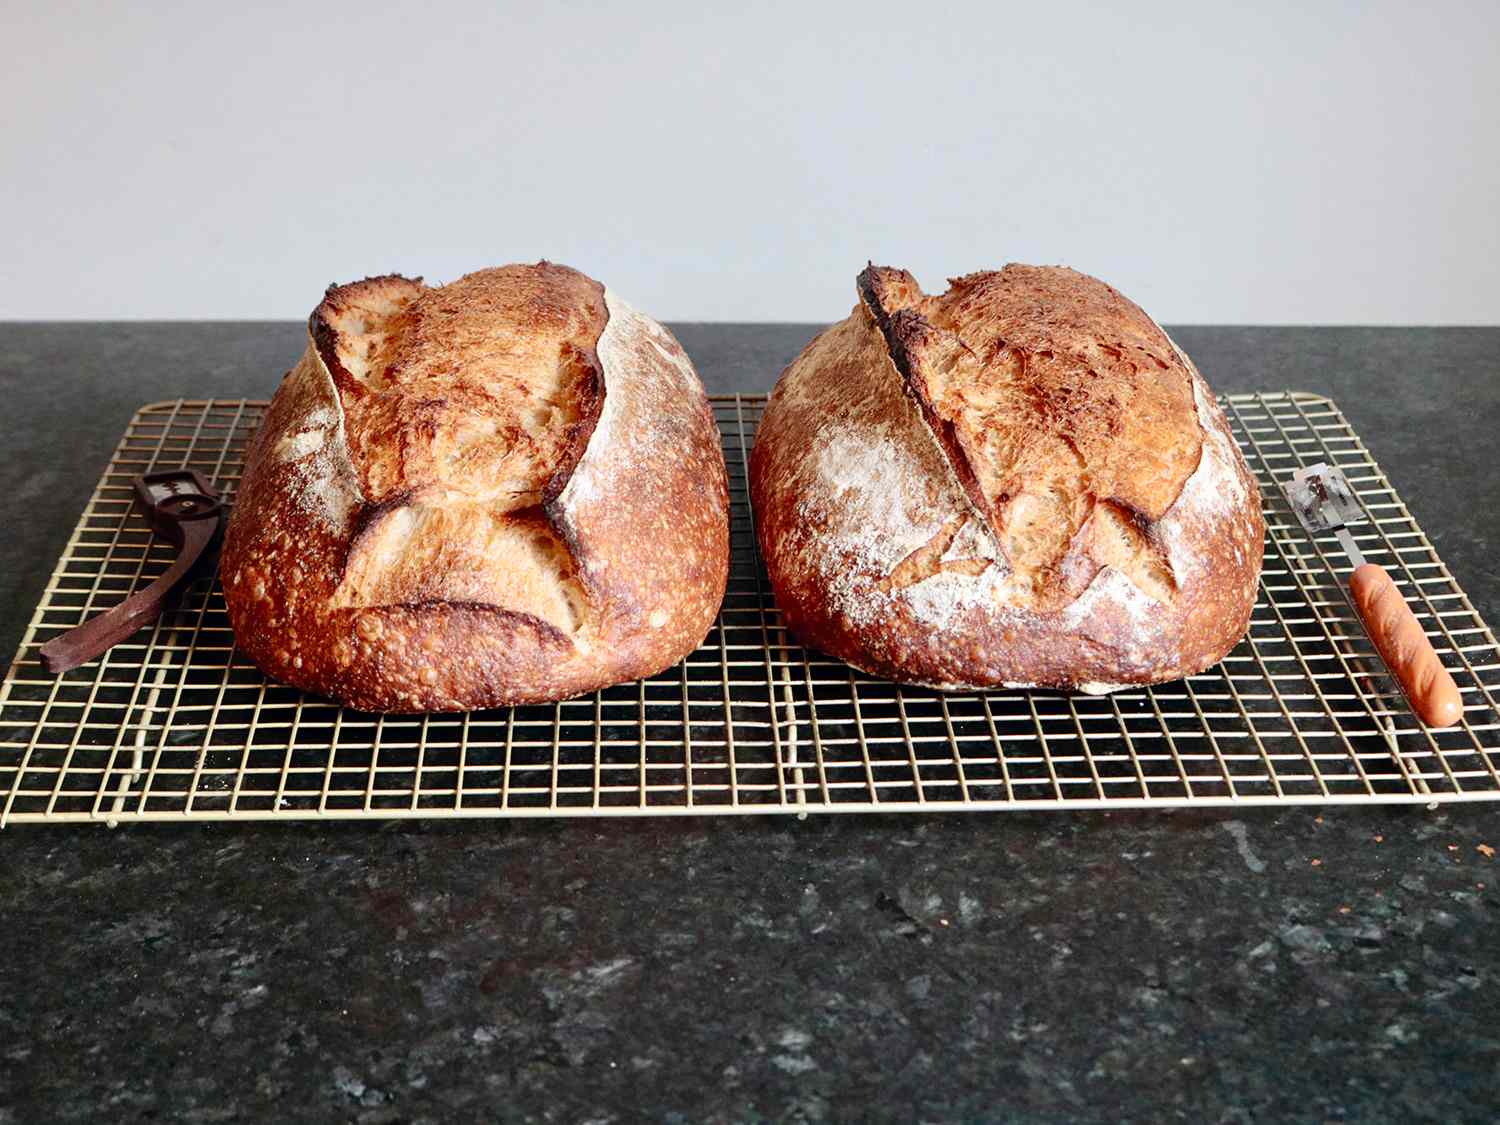 两条酸面包并排放在铁丝架上，旁边是一条直面包条和一条弯面包条。